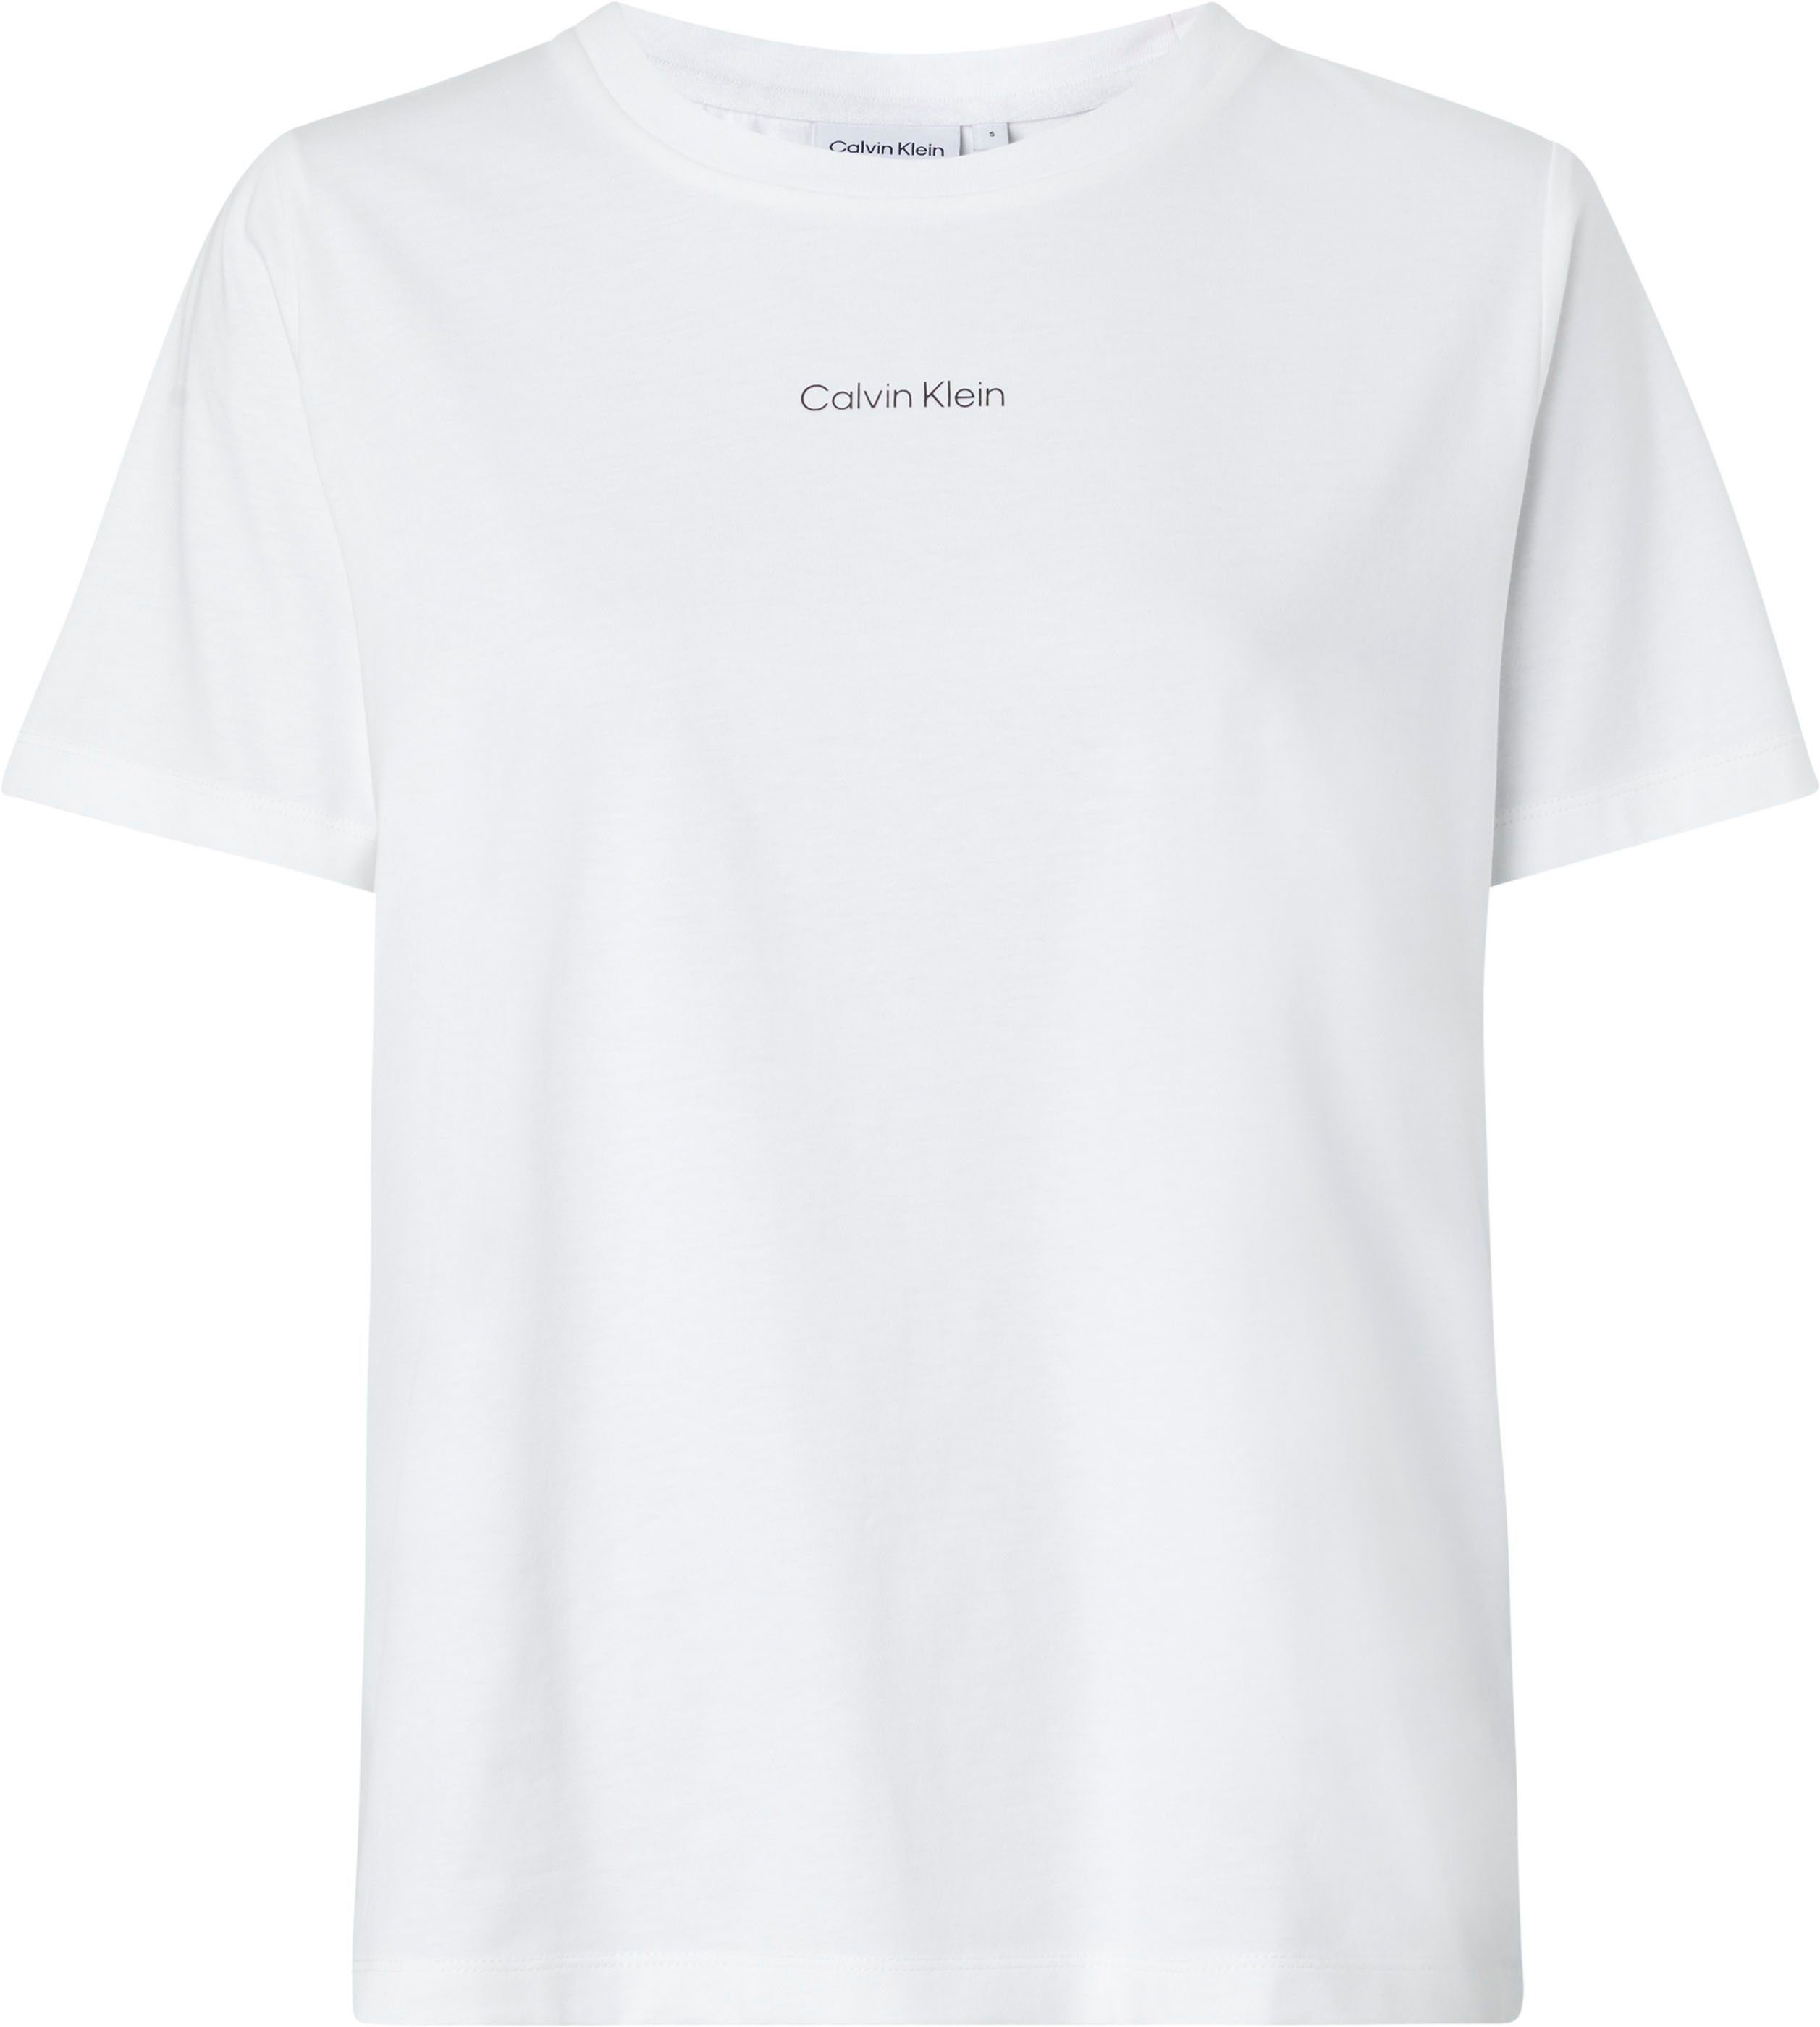 Calvin Klein Damen kaufen online OTTO | T-Shirts Günstige